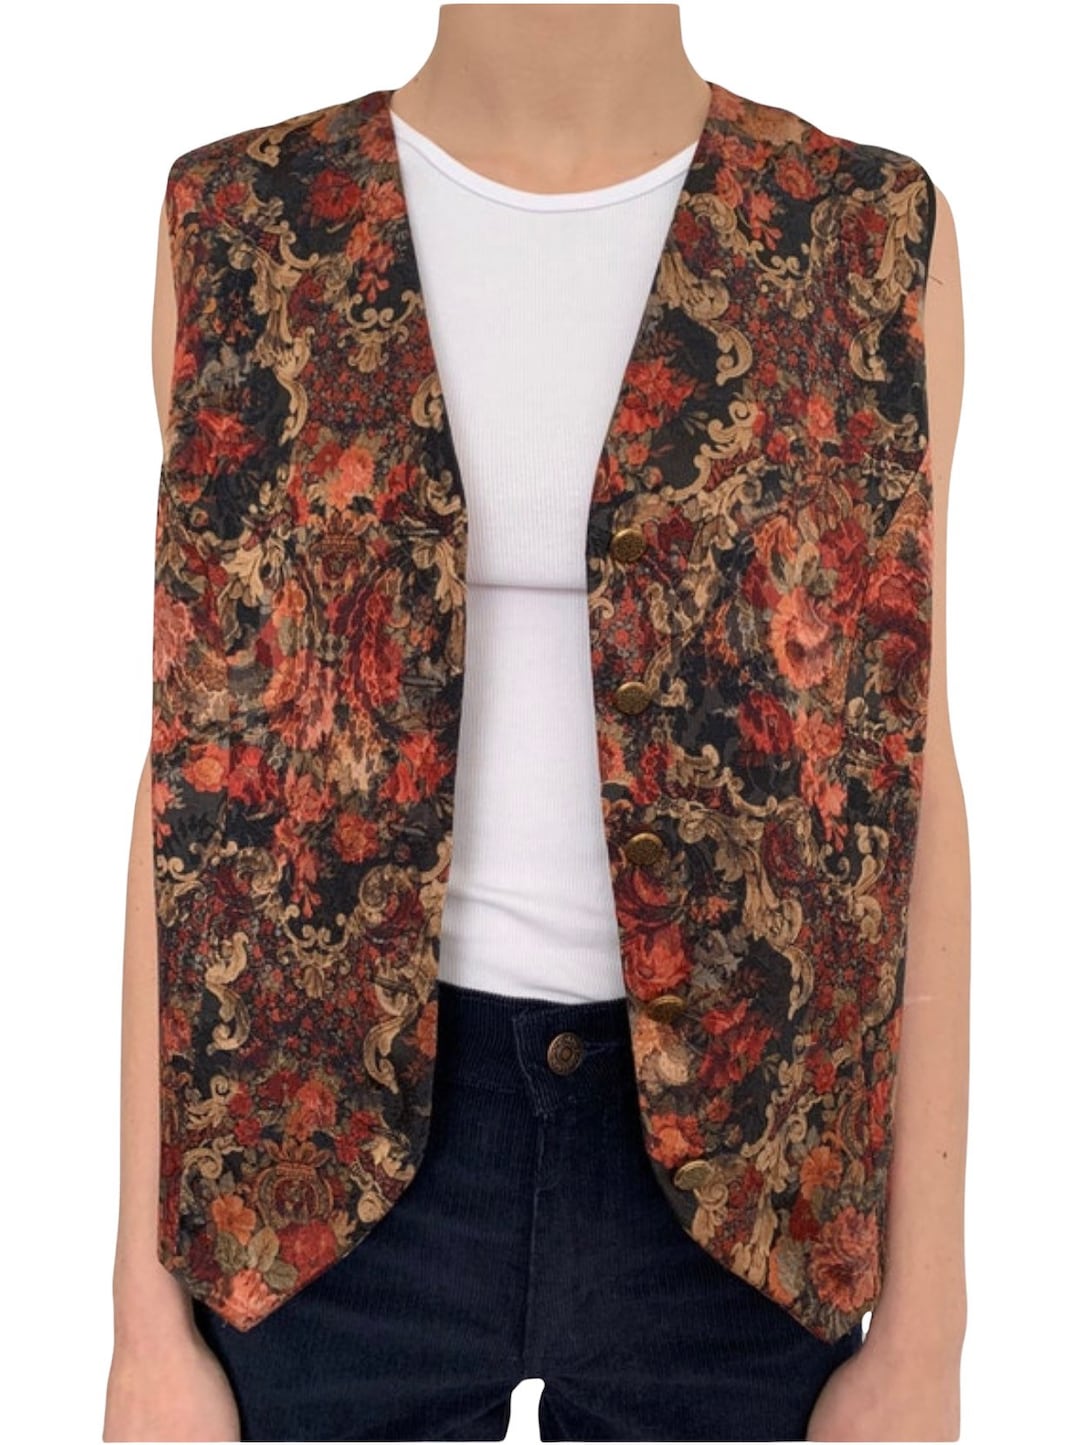 Vintage 1980s Carpet Bag Floral Design Button Down Vest. Size 8-12. - Etsy